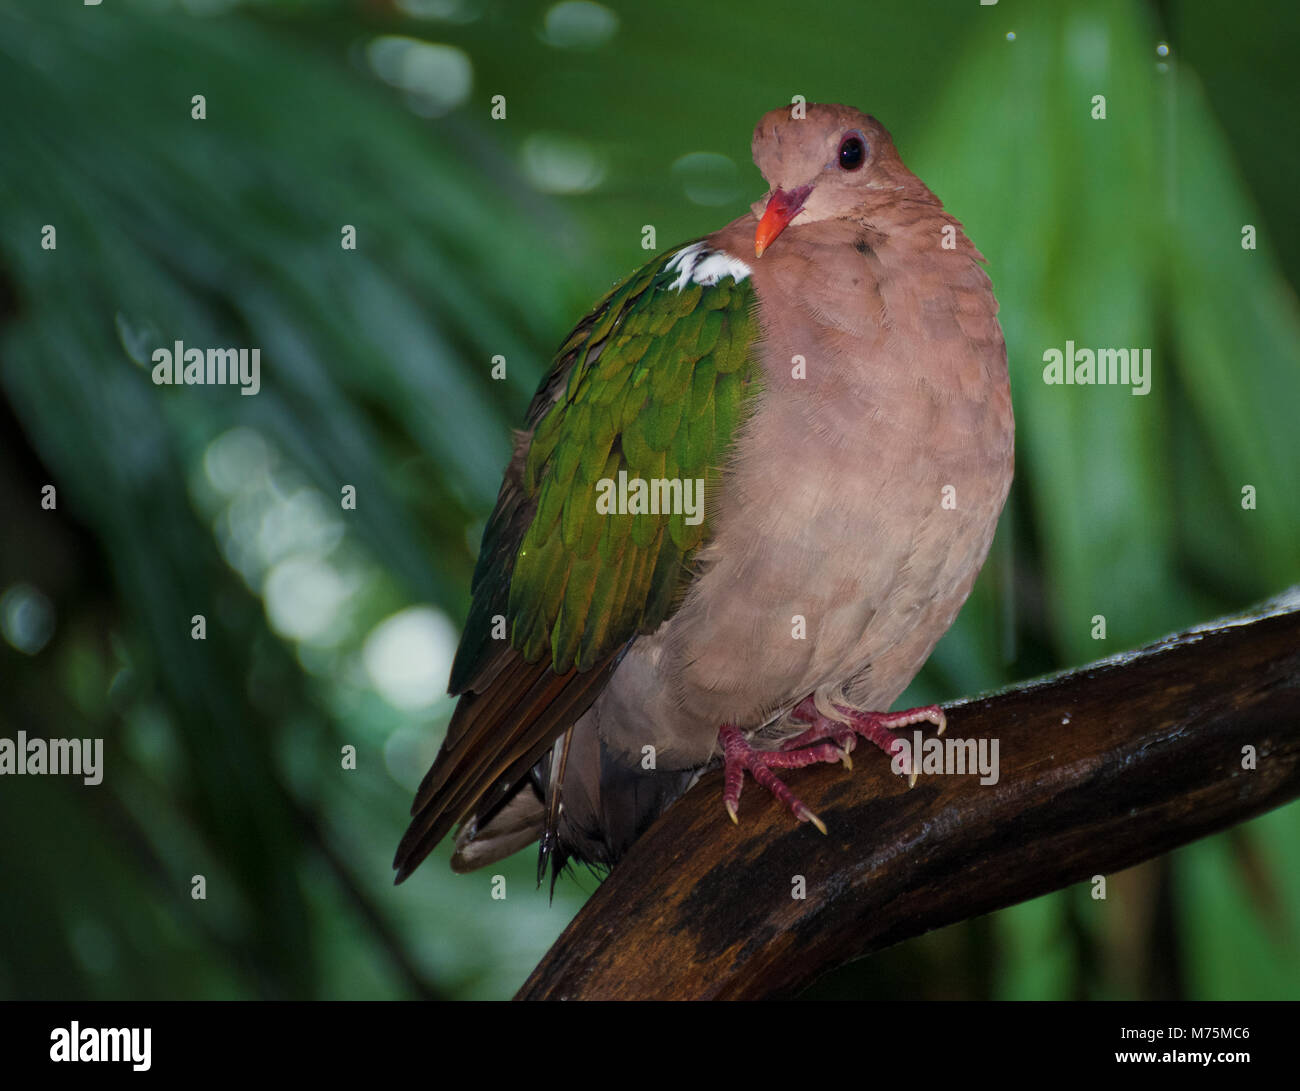 Ein nasser Wompoo Obst Dove (Ptilinopus magnificus) oder wompoo Taube, aus Neuguinea sitzt auf einem Regenwald Zweig Zuflucht von einem tropischen regen Sturm Stockfoto